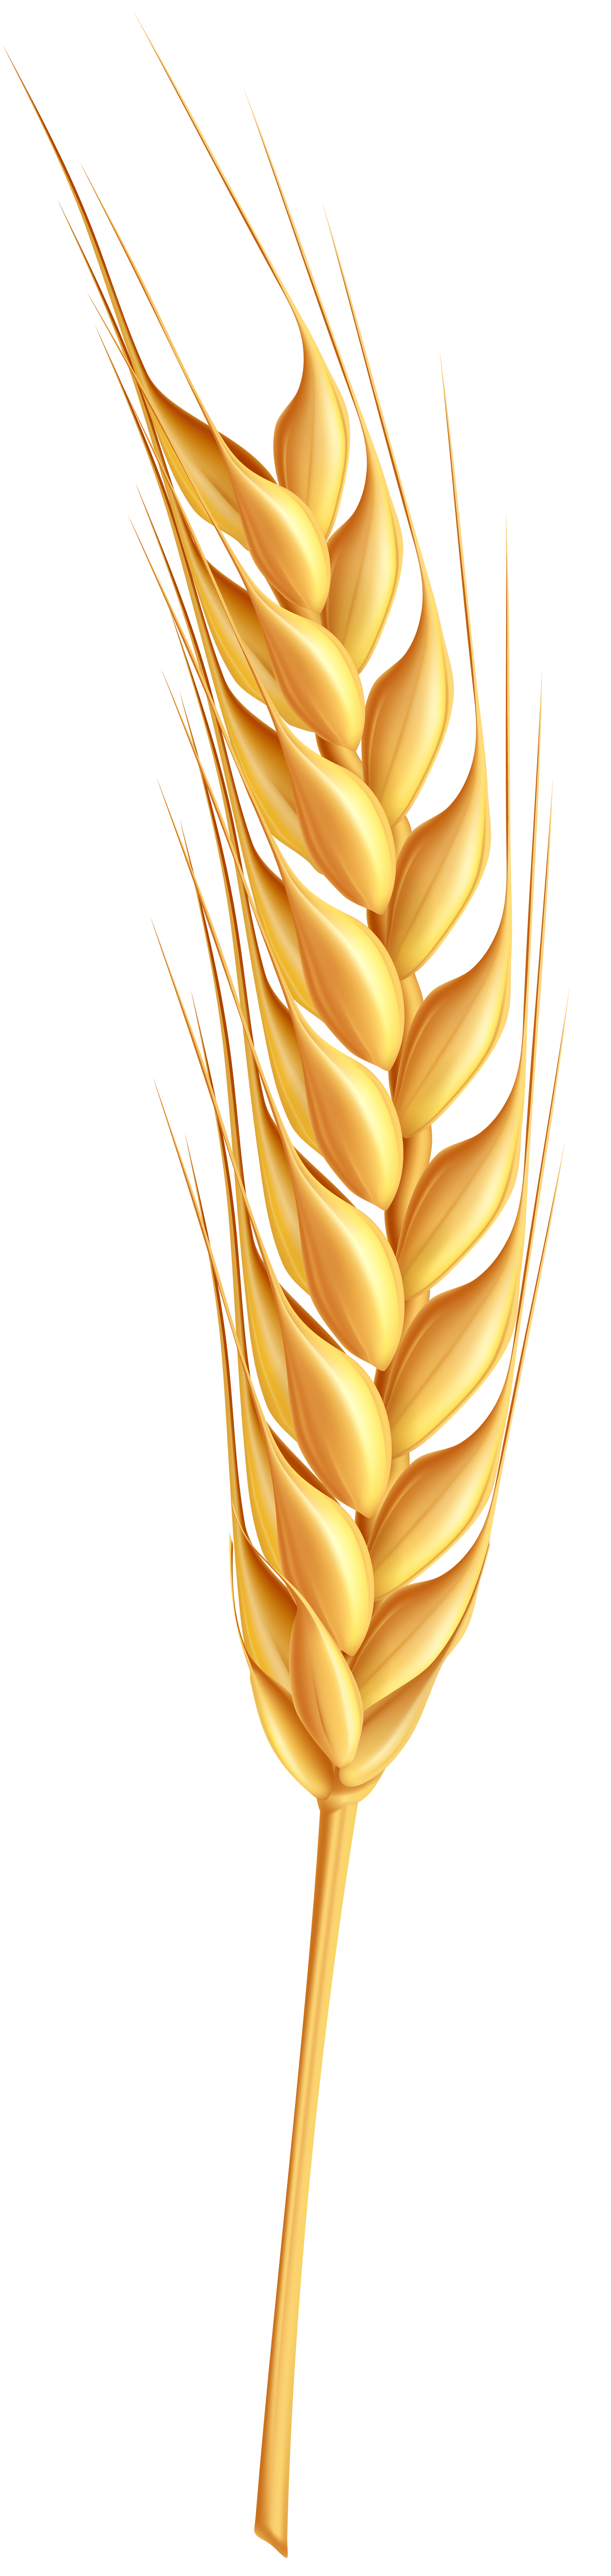 wheat-clip-art-wheat-907d139df71bf29d2d6f5df2b0f231bf